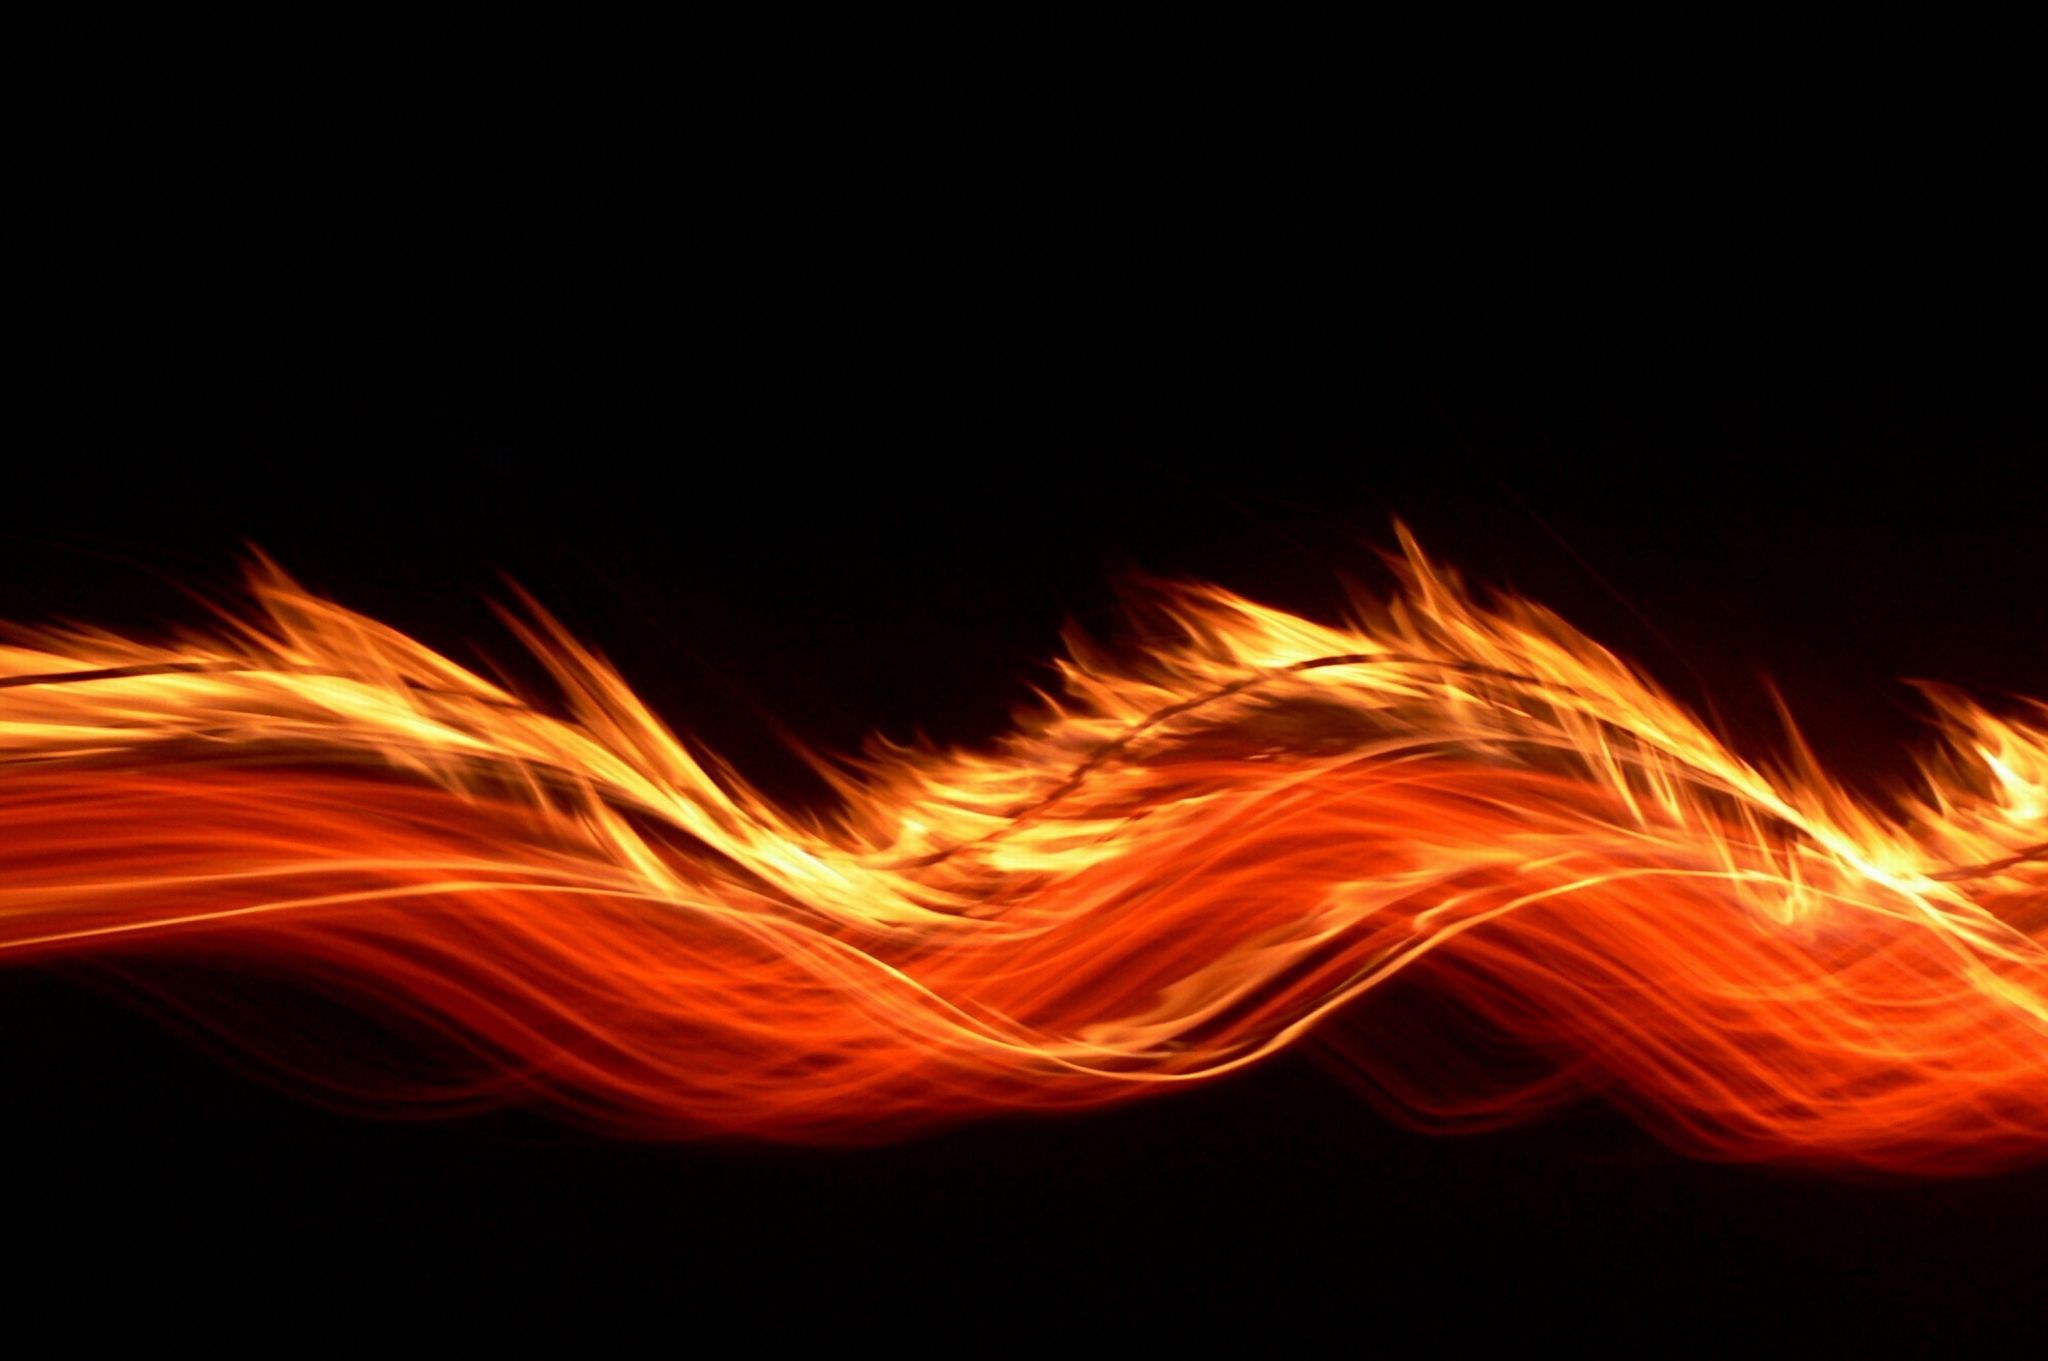 fire macbook wallpaper HD. Fire wallpaper, Fire wallpaper, Flame background